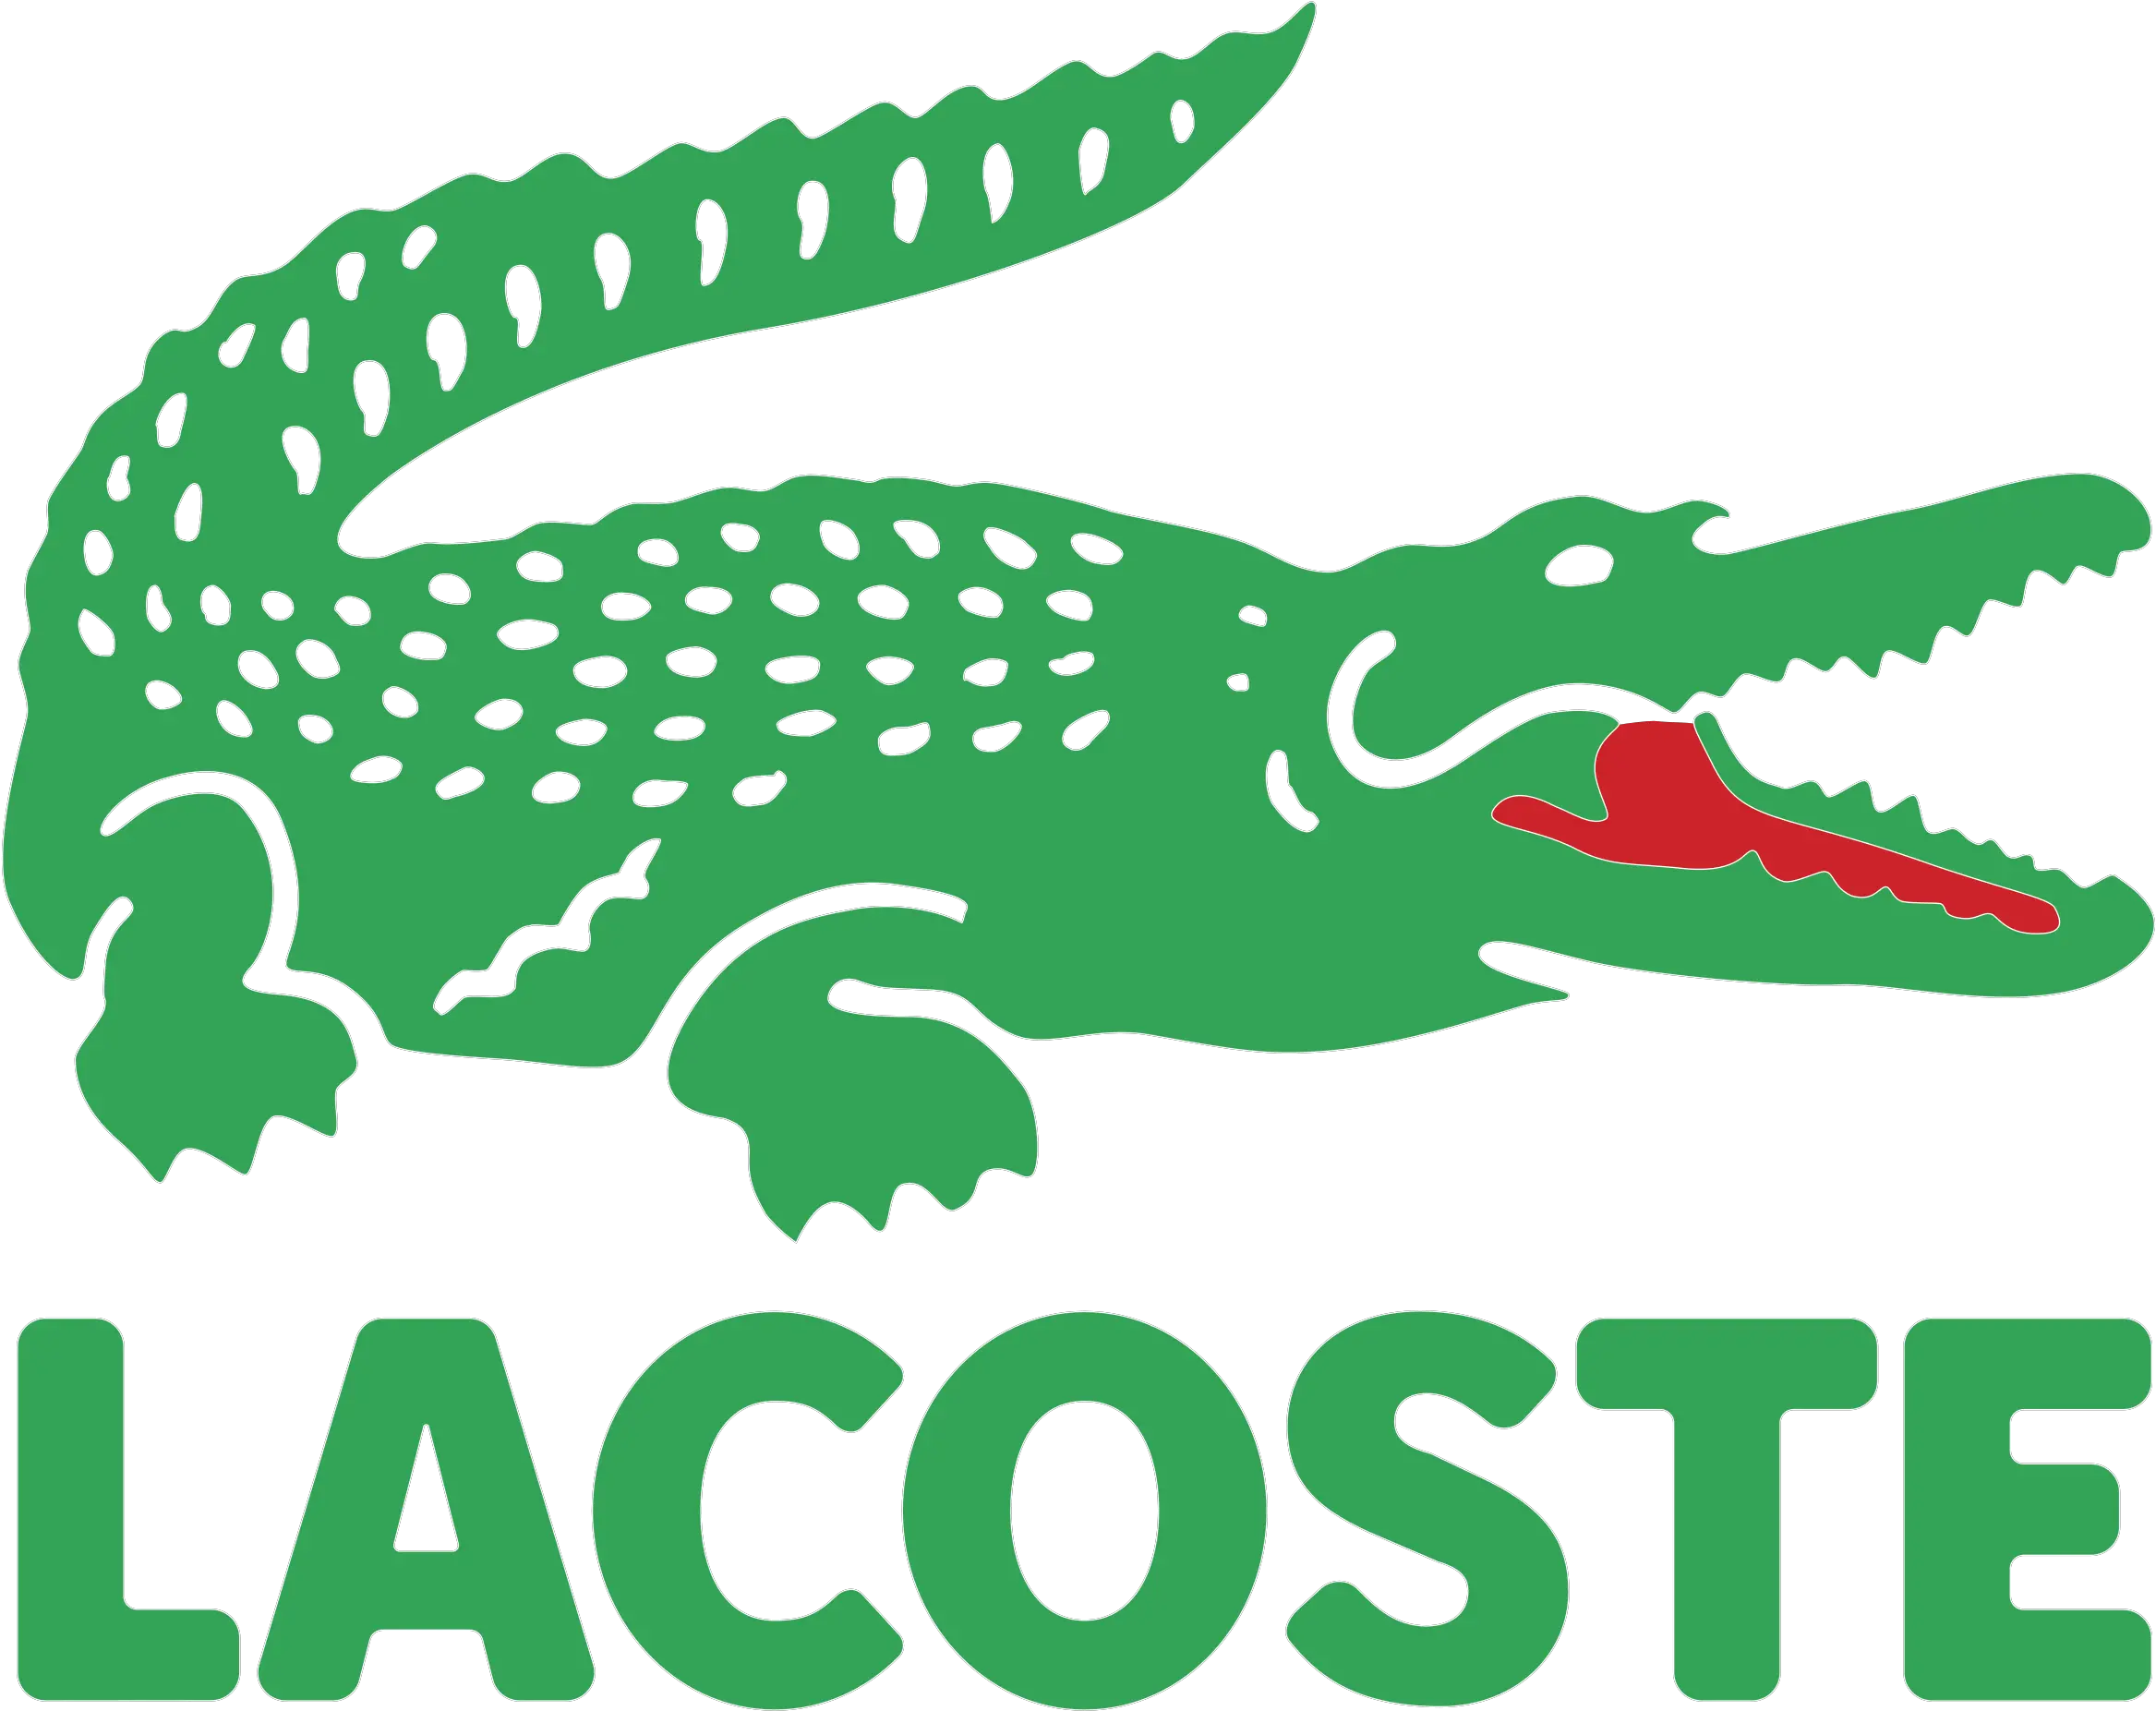 Lacoste Logo Png Transparent U0026 Svg Vector Freebie Supply Logo Lacoste Alligator Transparent Background